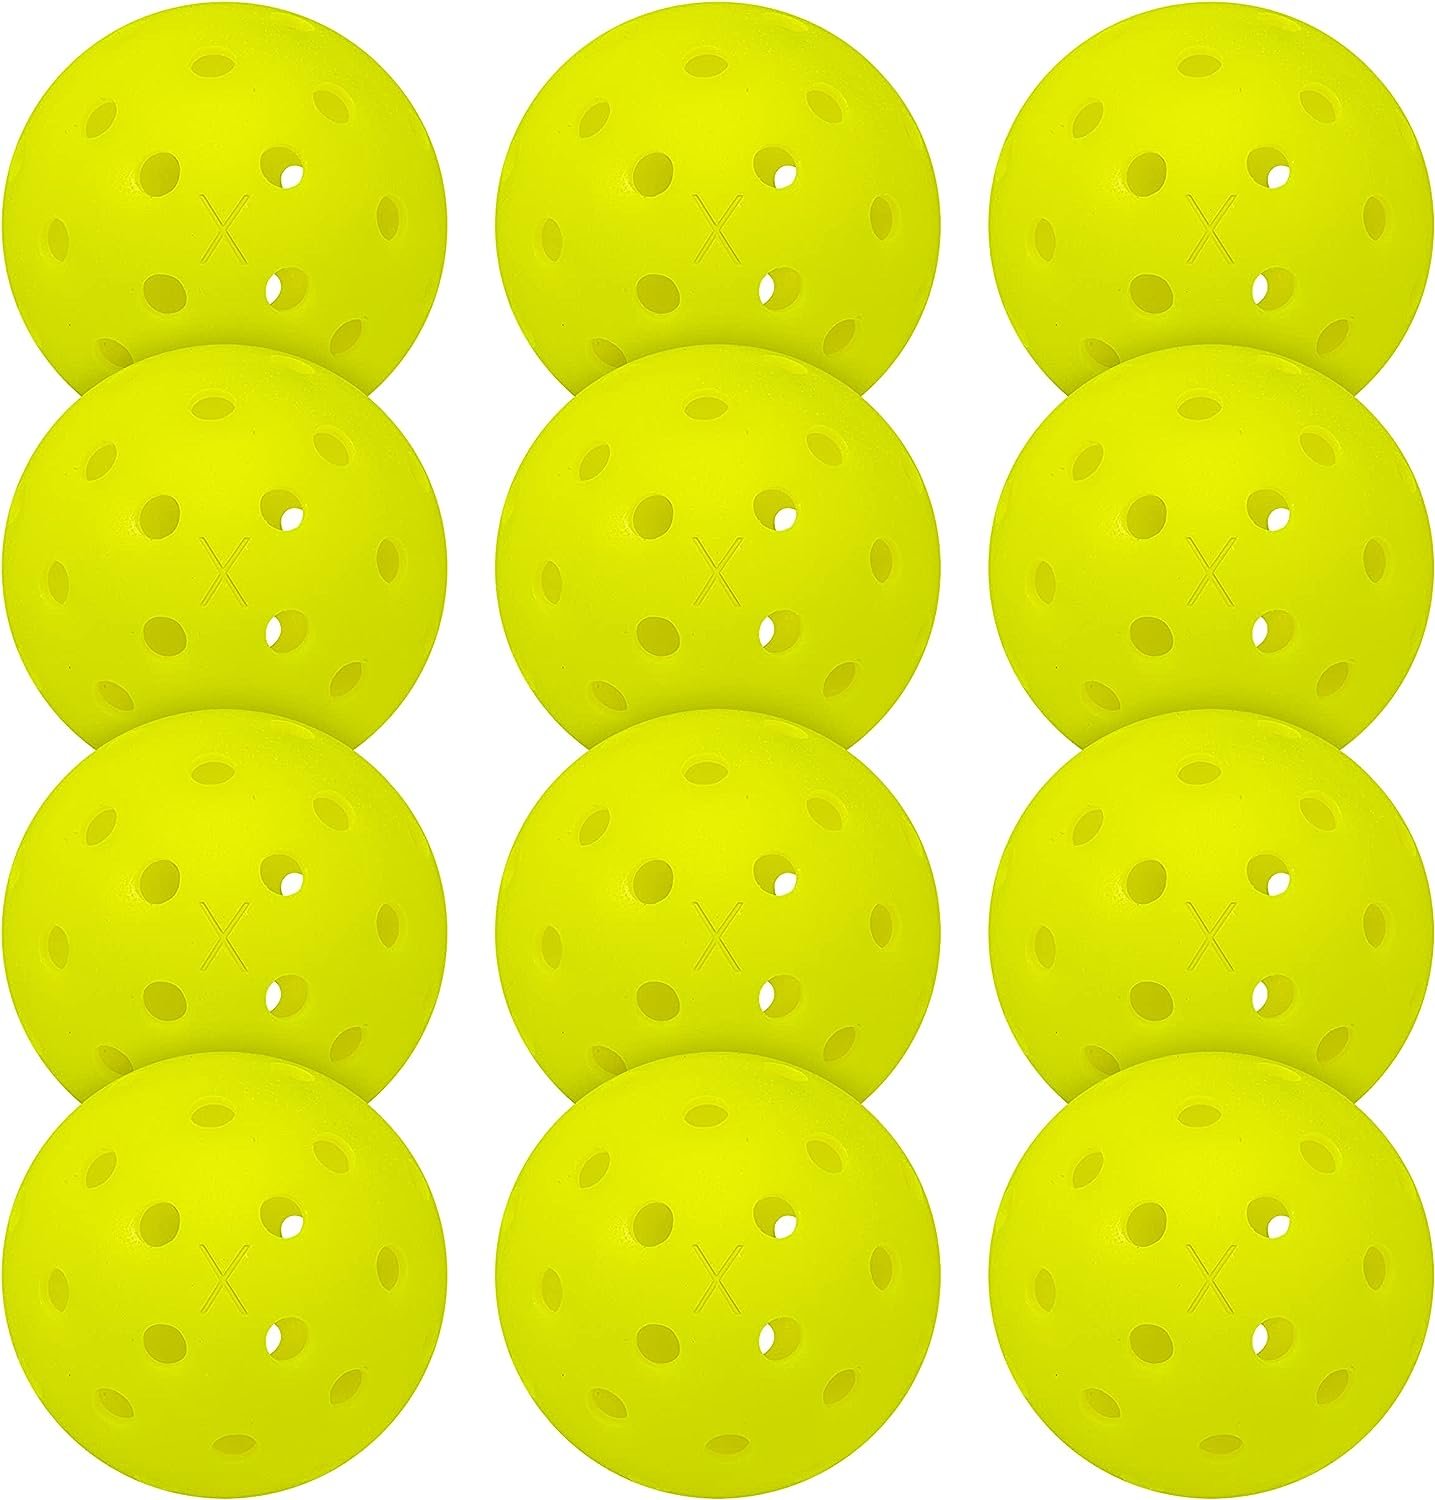 Franklin Sports Outdoor Pickleballs - X-40 Pickleball Balls - USA Pickleball (USAPA) Approved - Official US Open Ball - 3 Packs, 12 Packs, 36 Pickleball Buckets, 100 + 400 Bulk Packs of Pickleballs